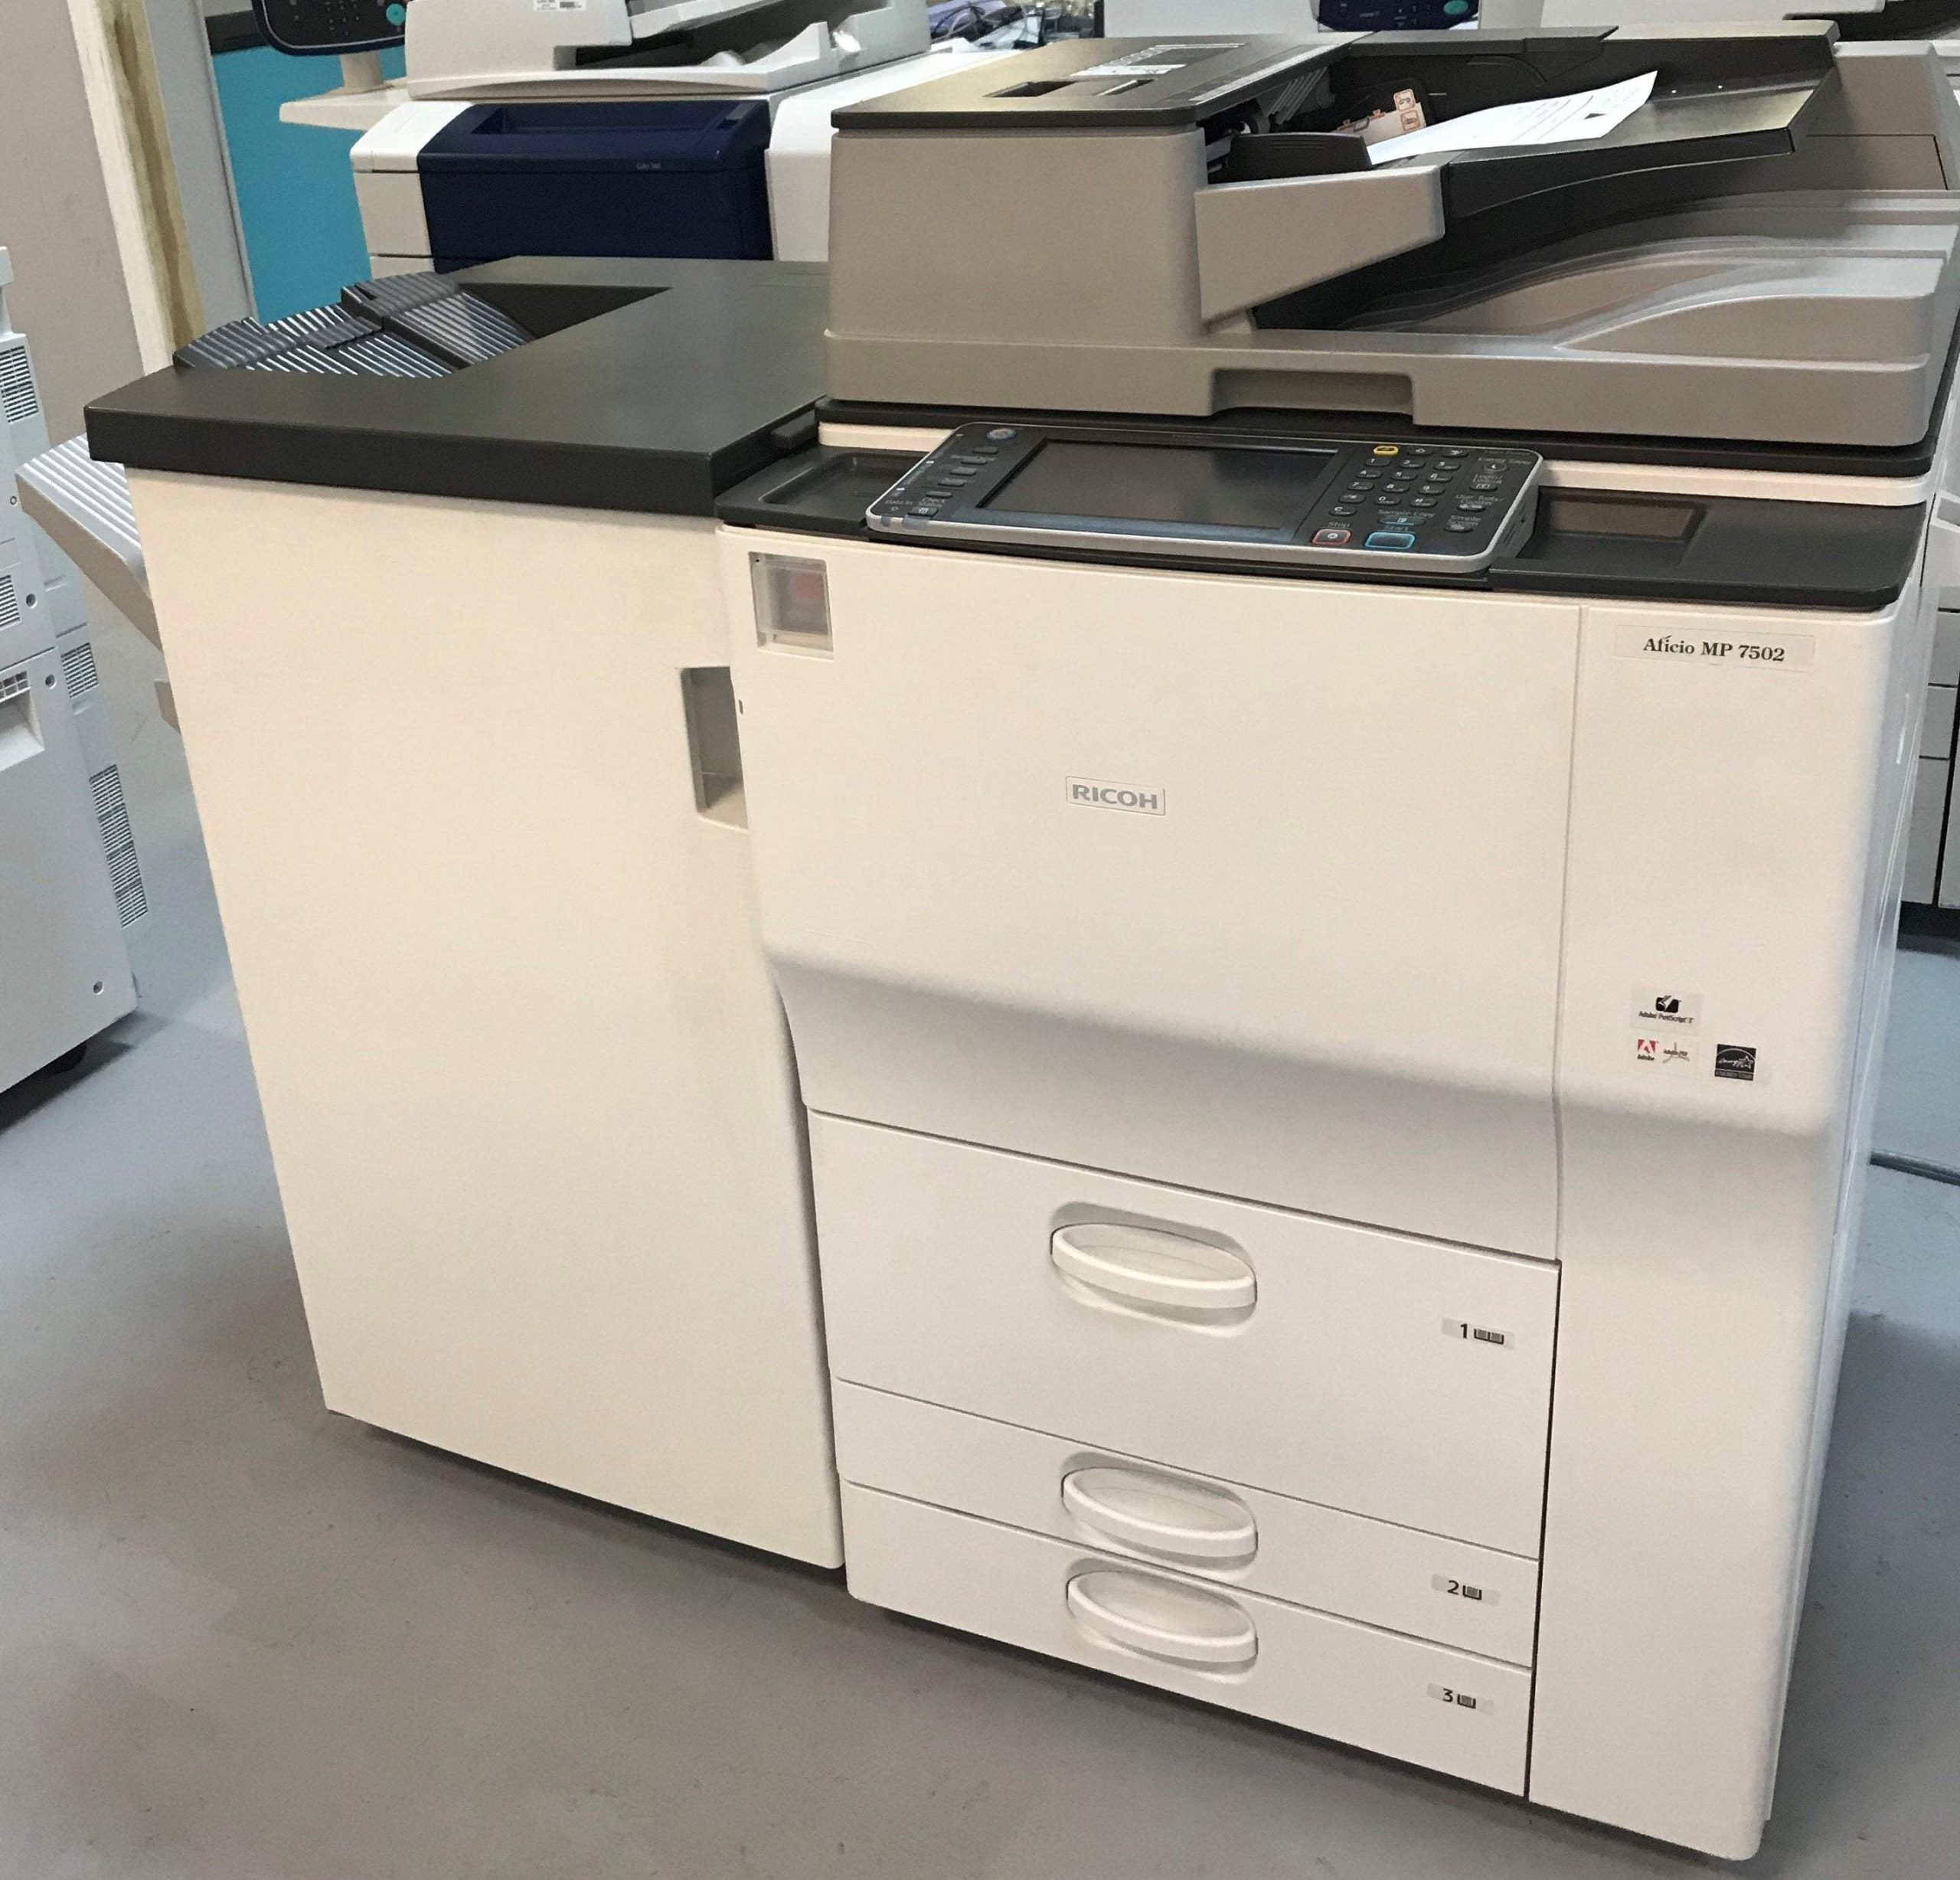 Máy photocopy Ricoh công nghiệp MP 7502 được nhiều doanh nghiệp lựa chọn